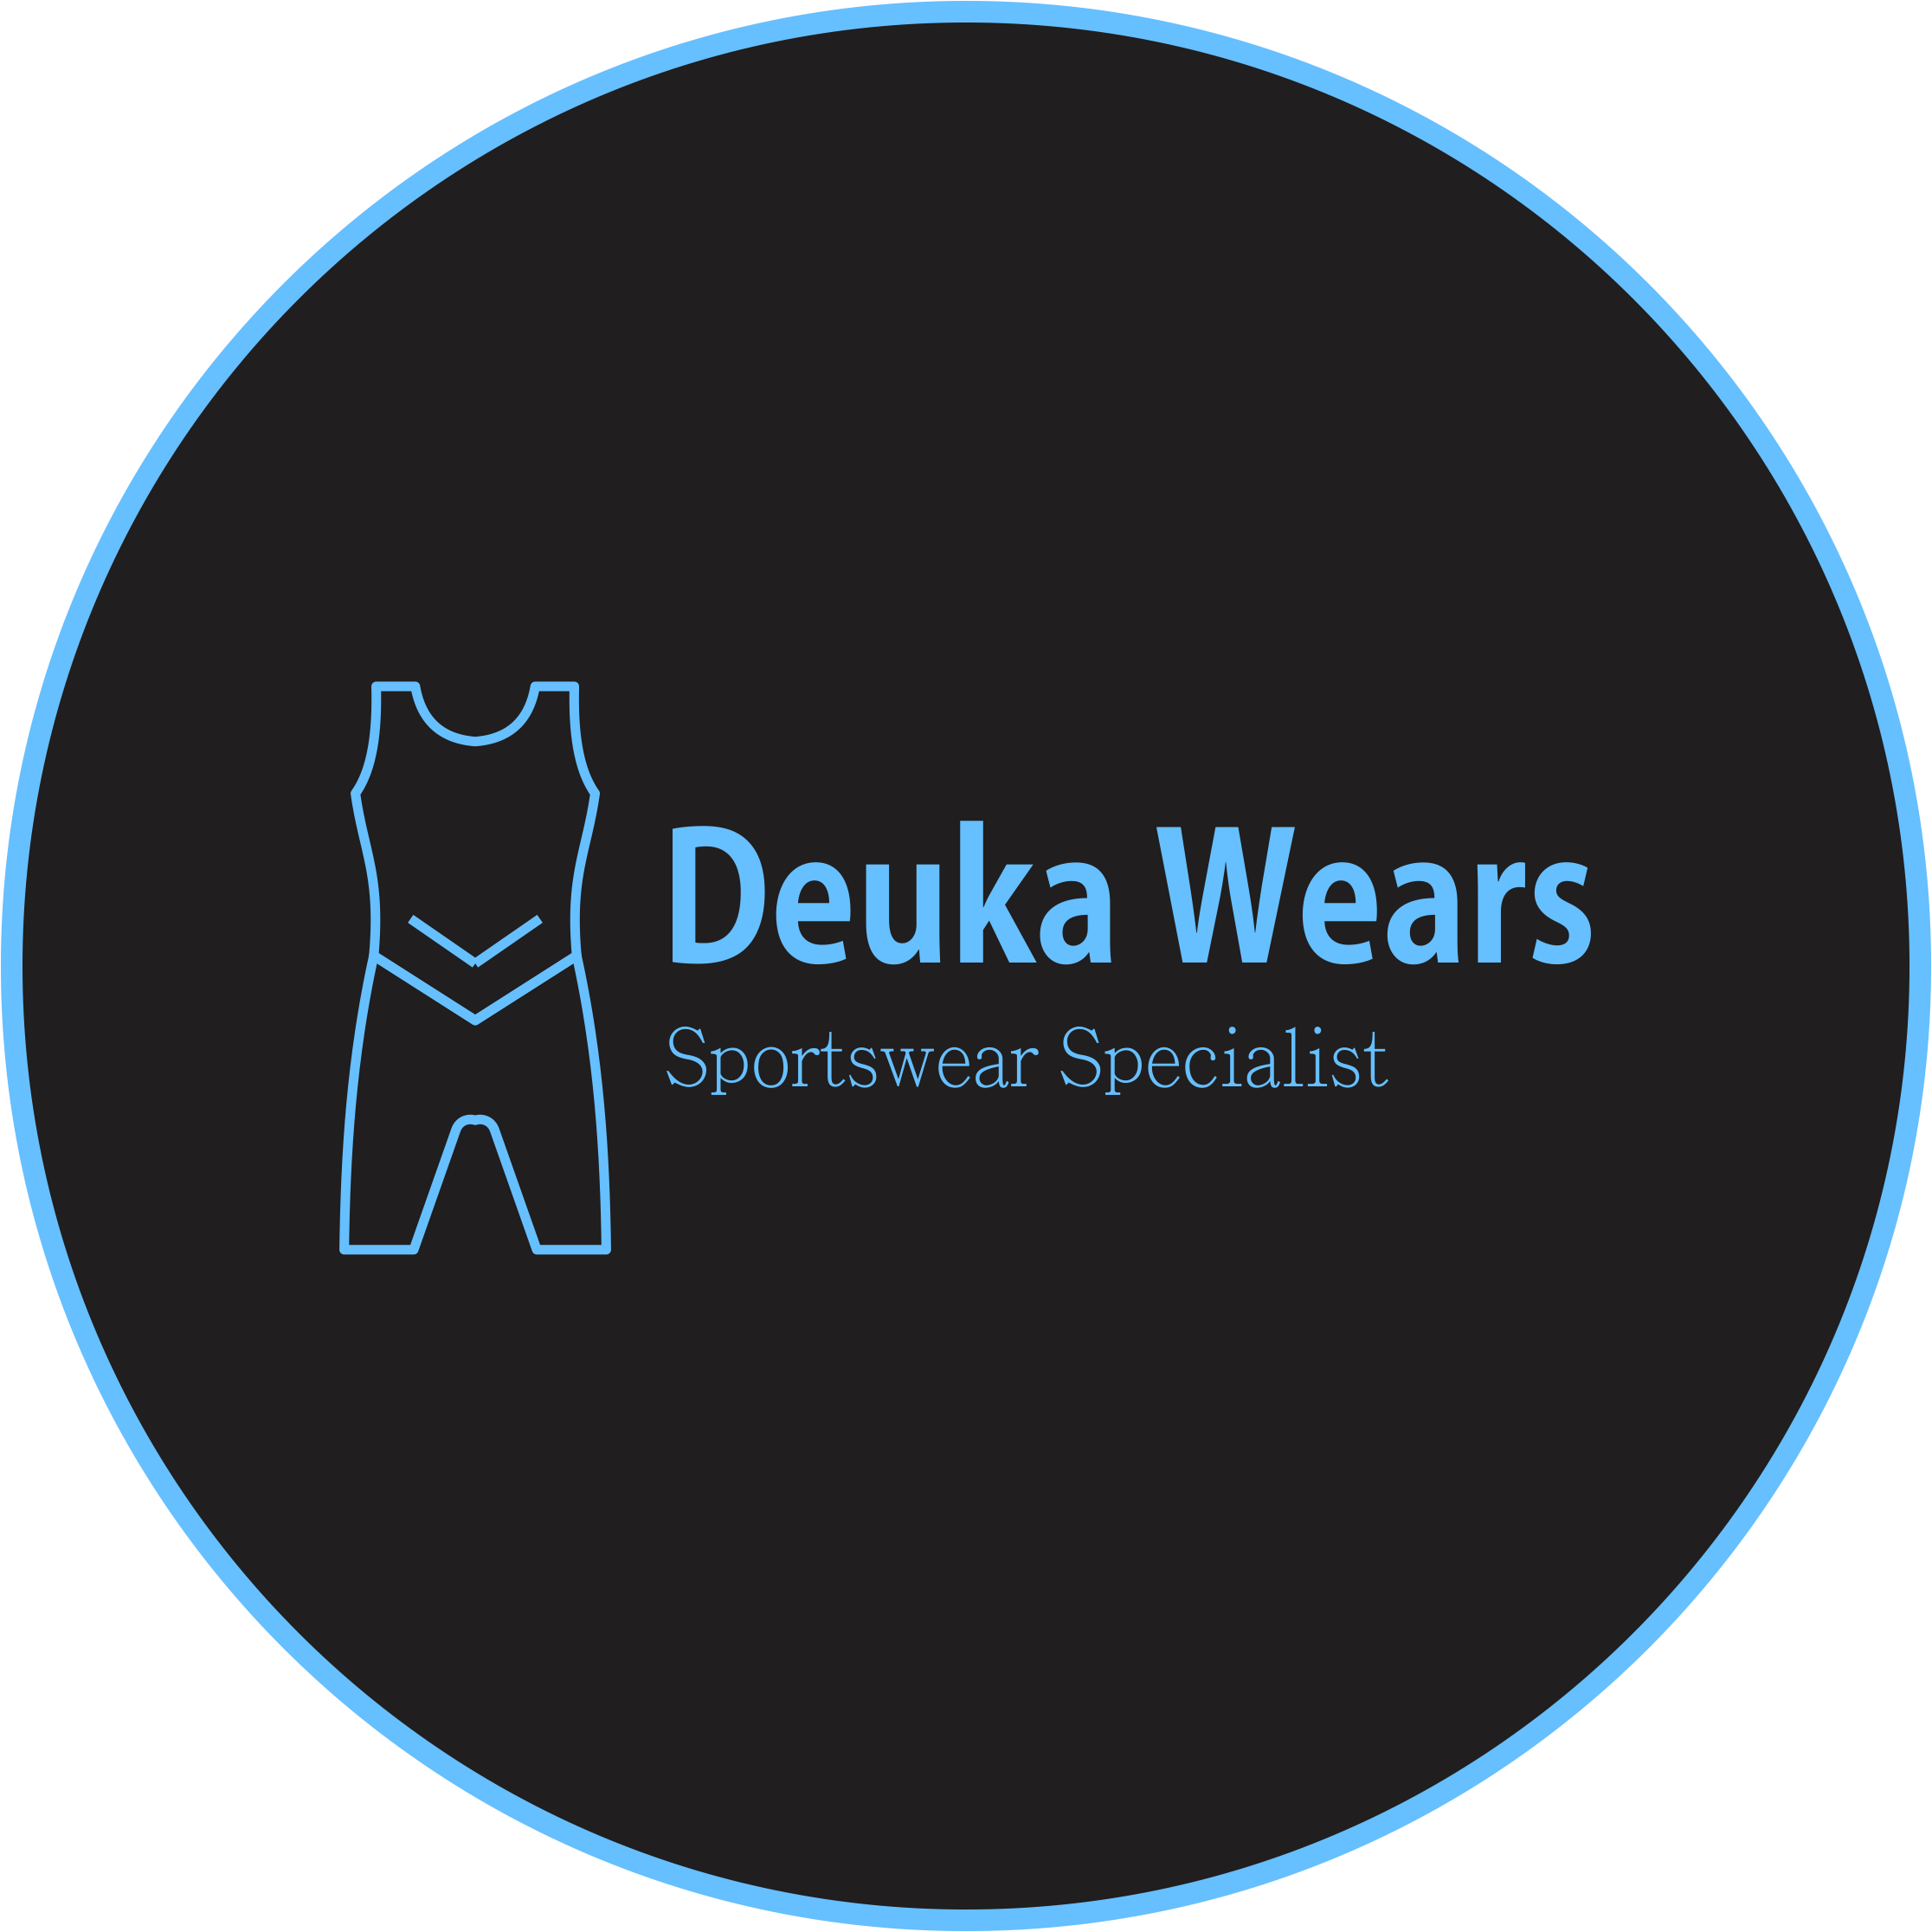 Deuka Wears